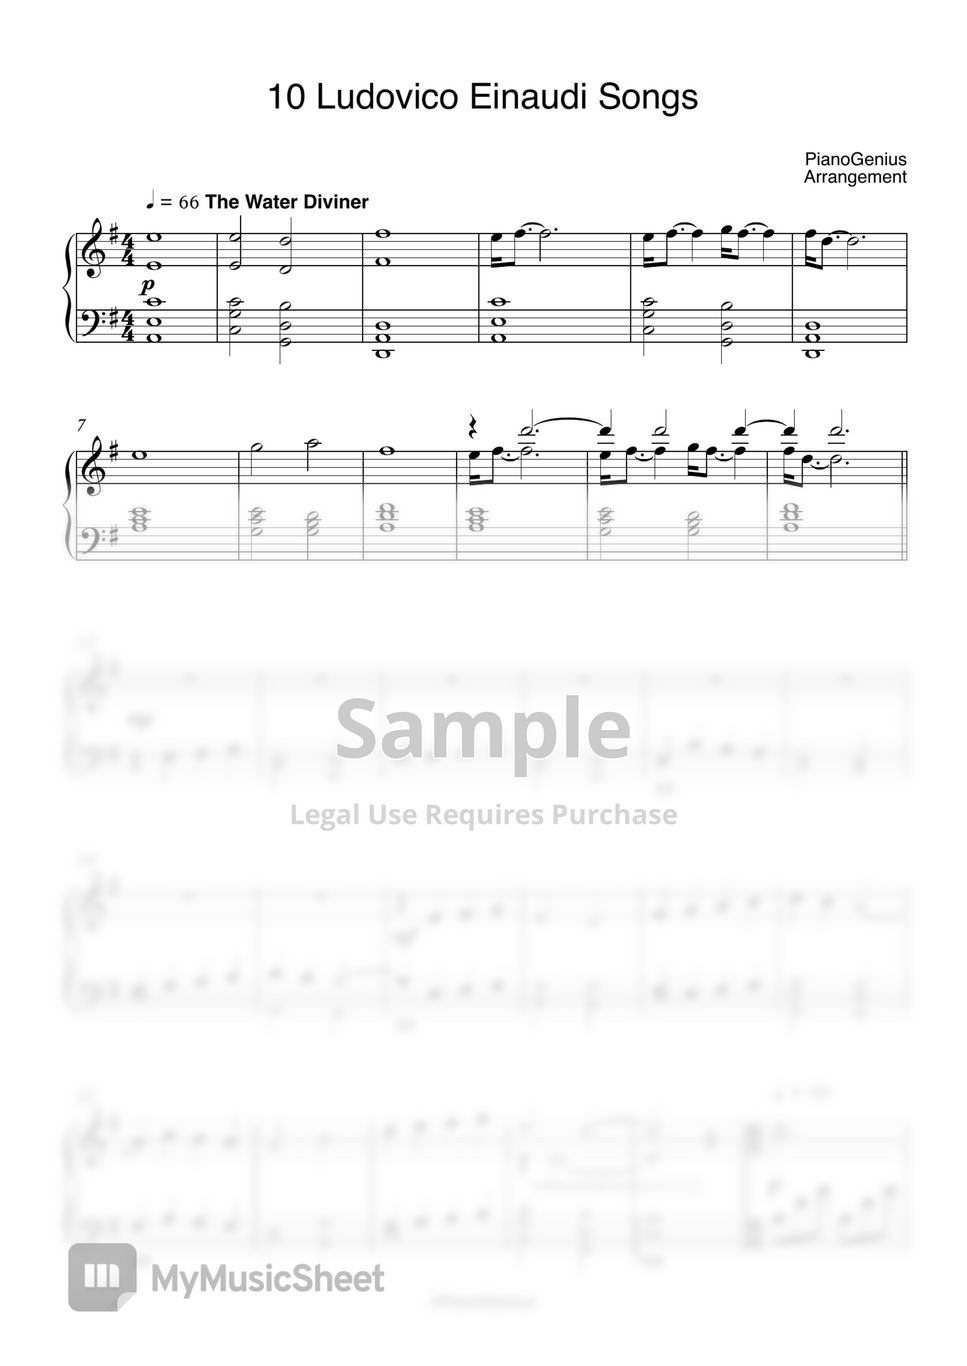 Download Ludovico Einaudi Night Sheet Music & PDF Chords